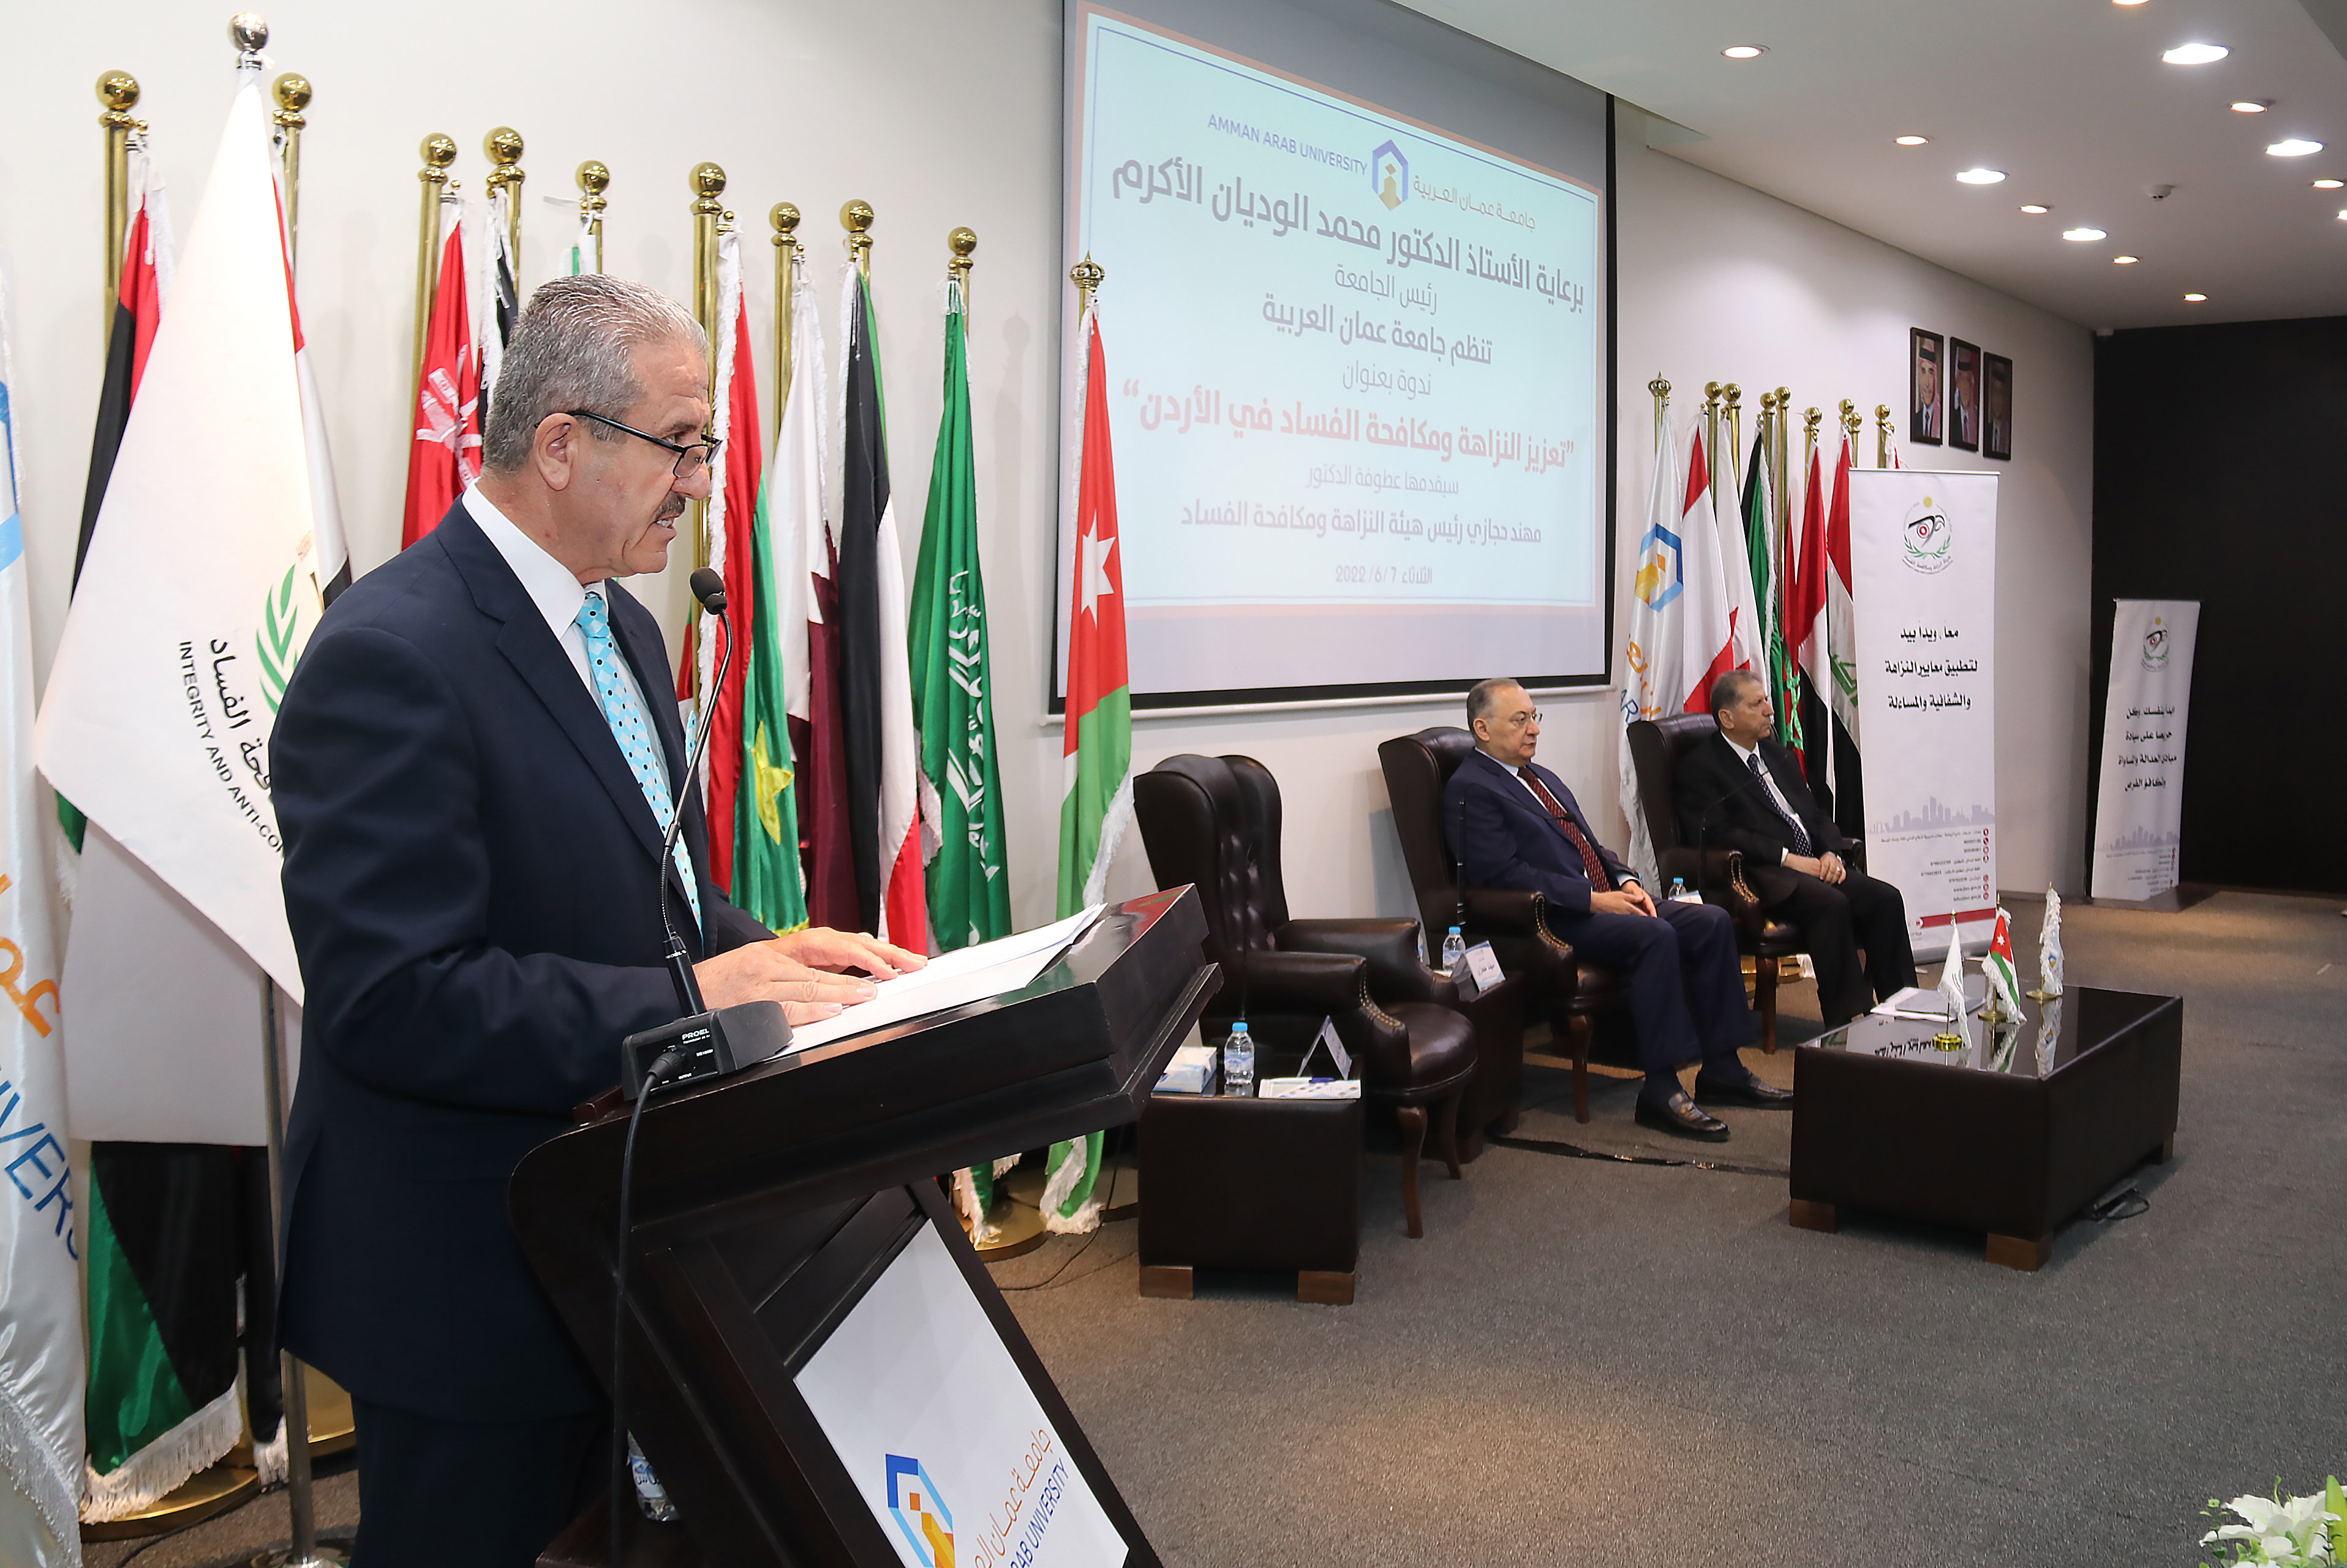 رئيس مجلس هيئة النزاهة ومكافحة الفساد يحاضر في جامعة عمان العربية6